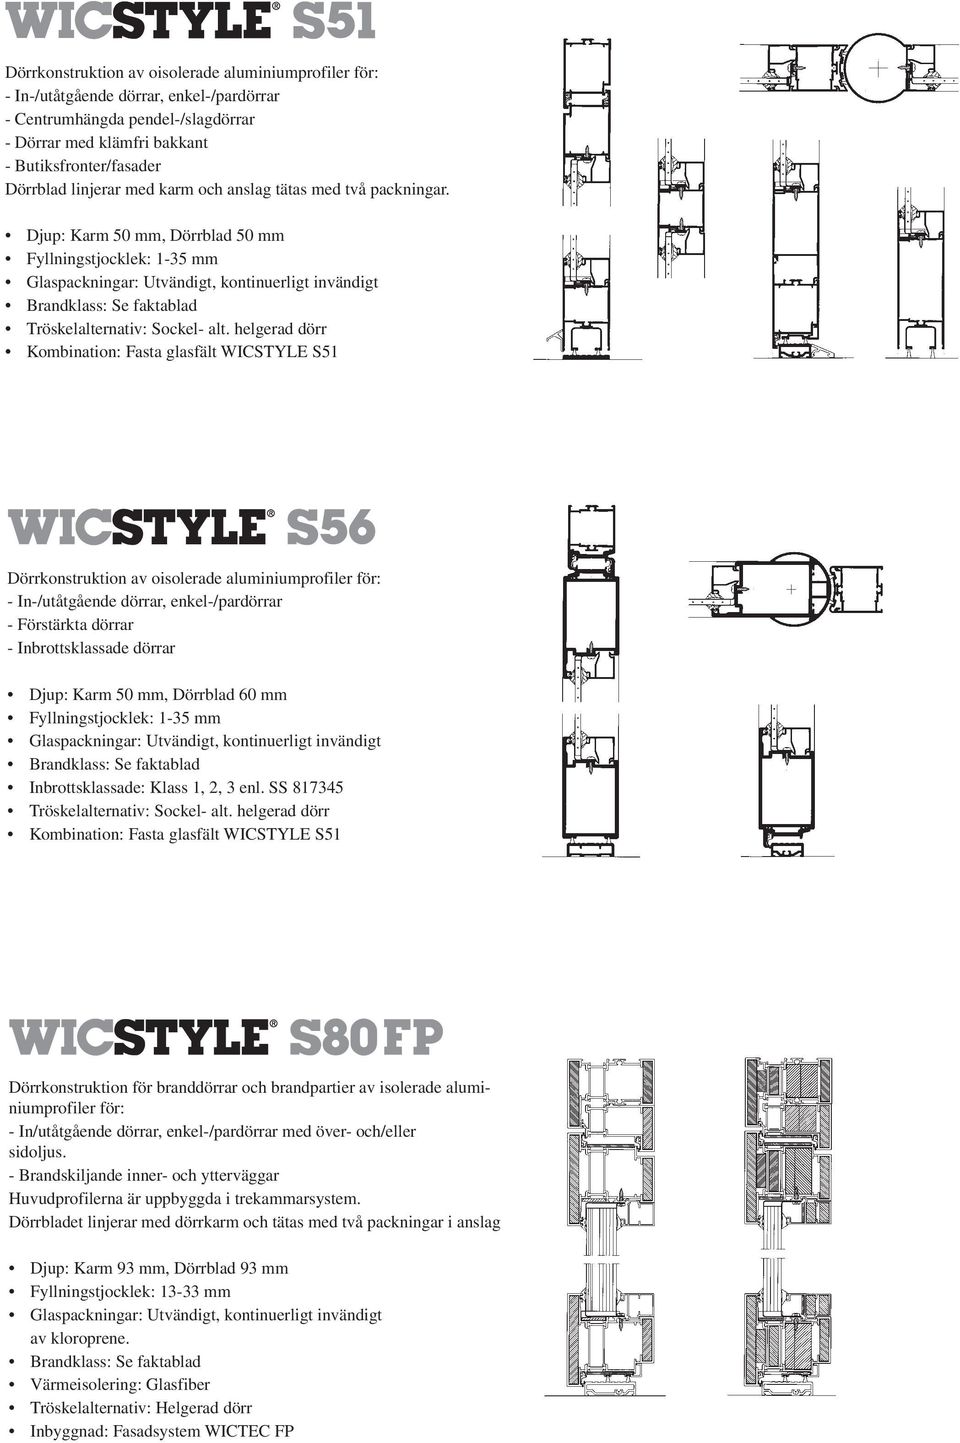 helgerad dörr Kombination: Fasta glasfält WICSTYLE S51 Dörrkonstruktion av oisolerade aluminiumprofiler för: - Förstärkta dörrar - Inbrottsklassade dörrar Djup: Karm 50 mm, Dörrblad 60 mm